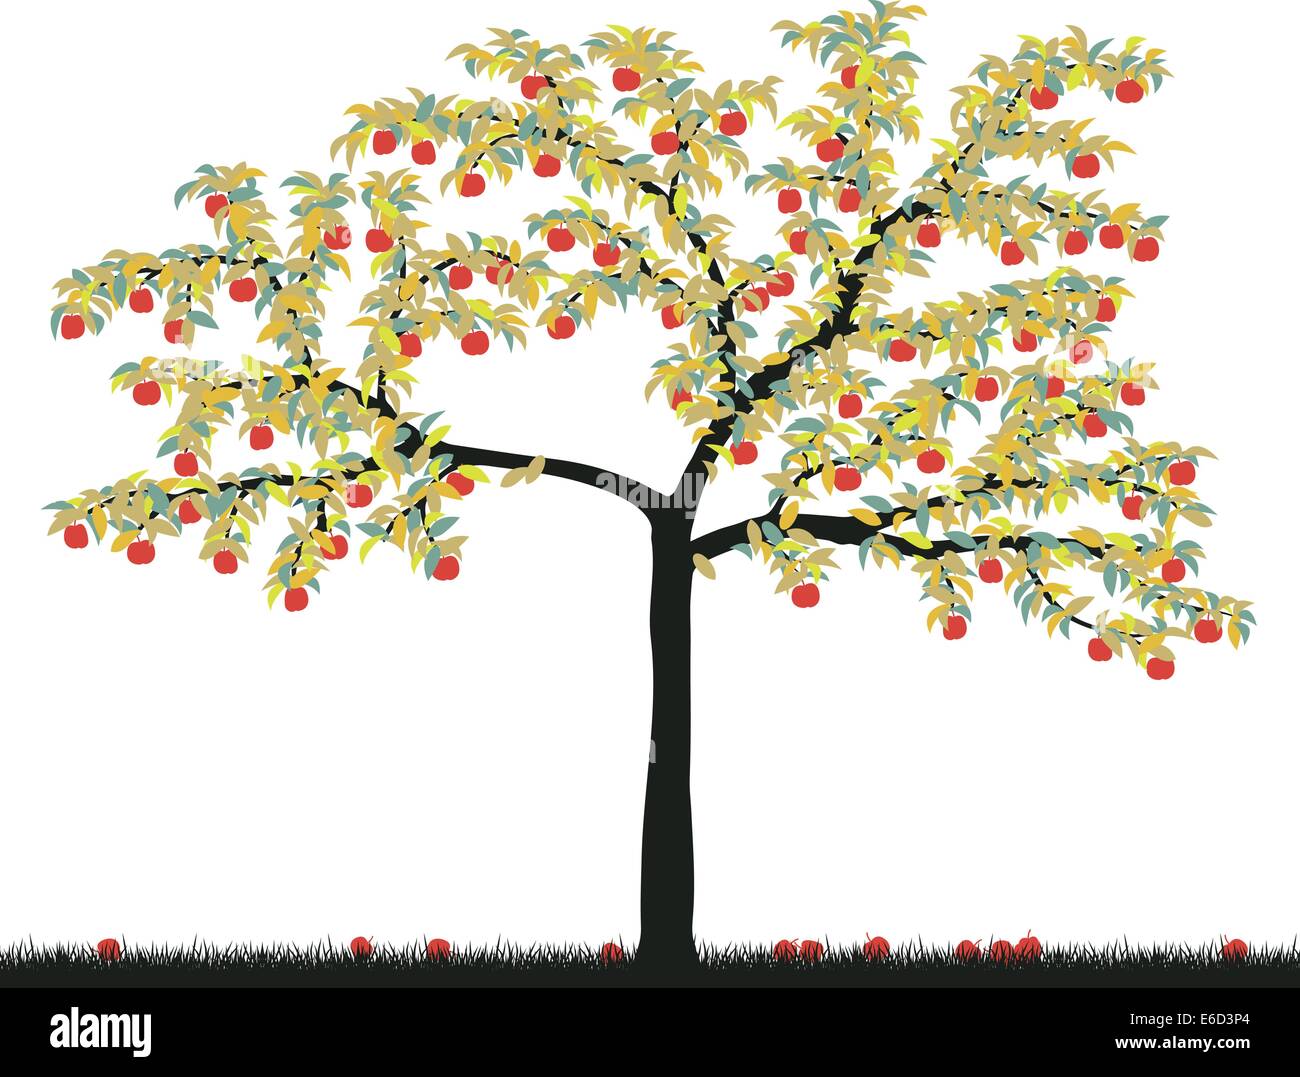 Editierbare Vektor-Illustration von einem bunten Apfelbaum Stock Vektor